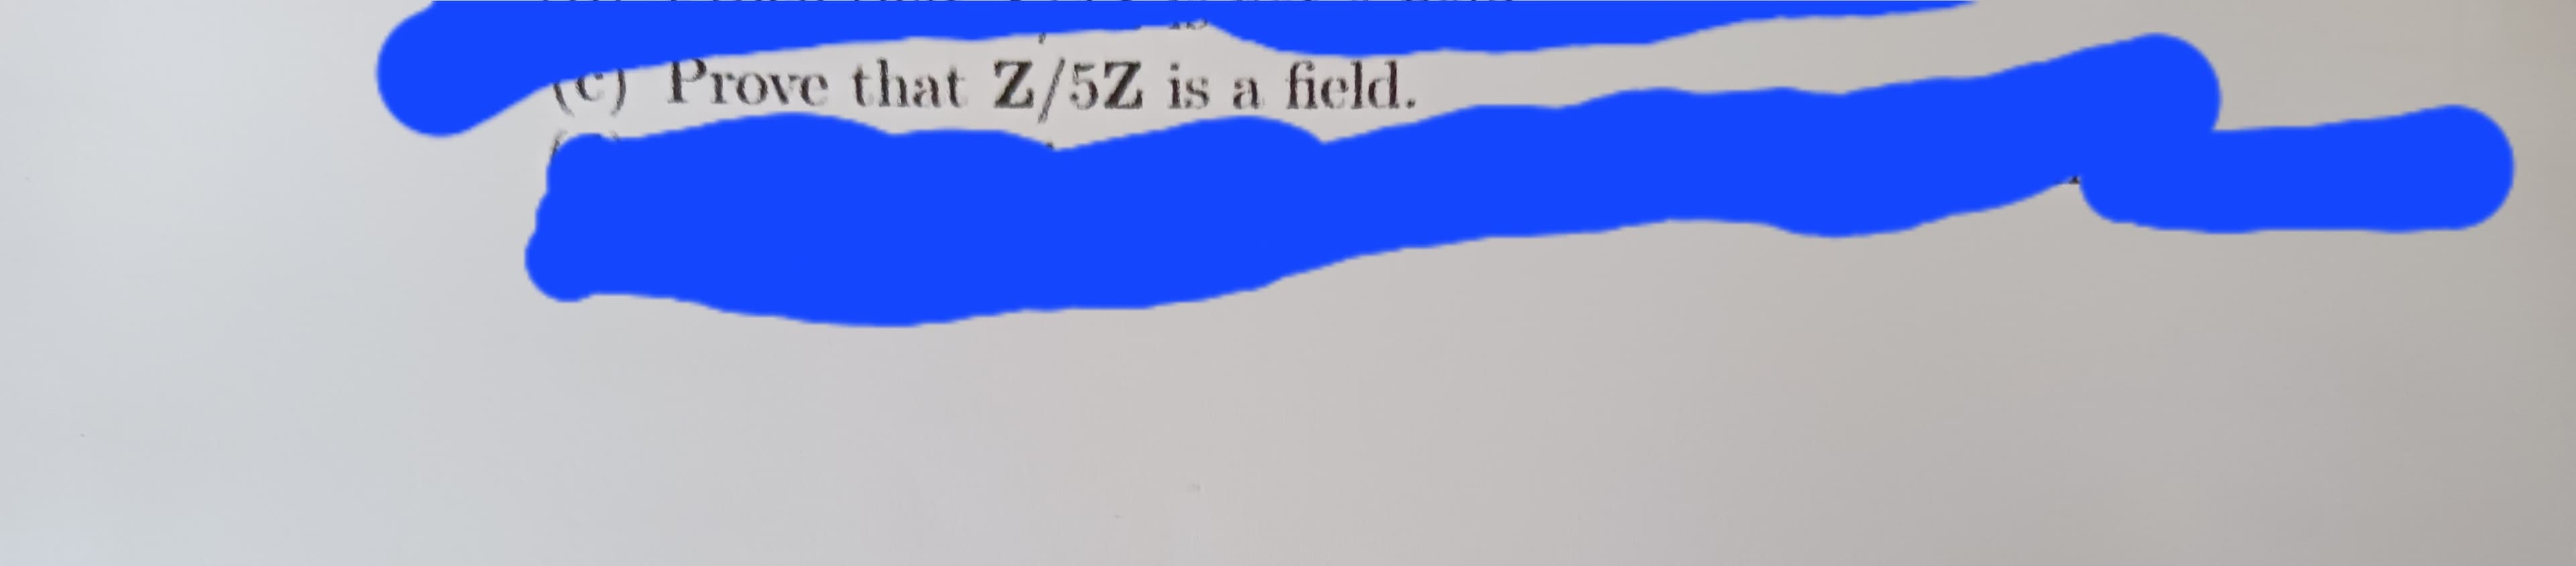 C) Prove that Z/5Z is a field.